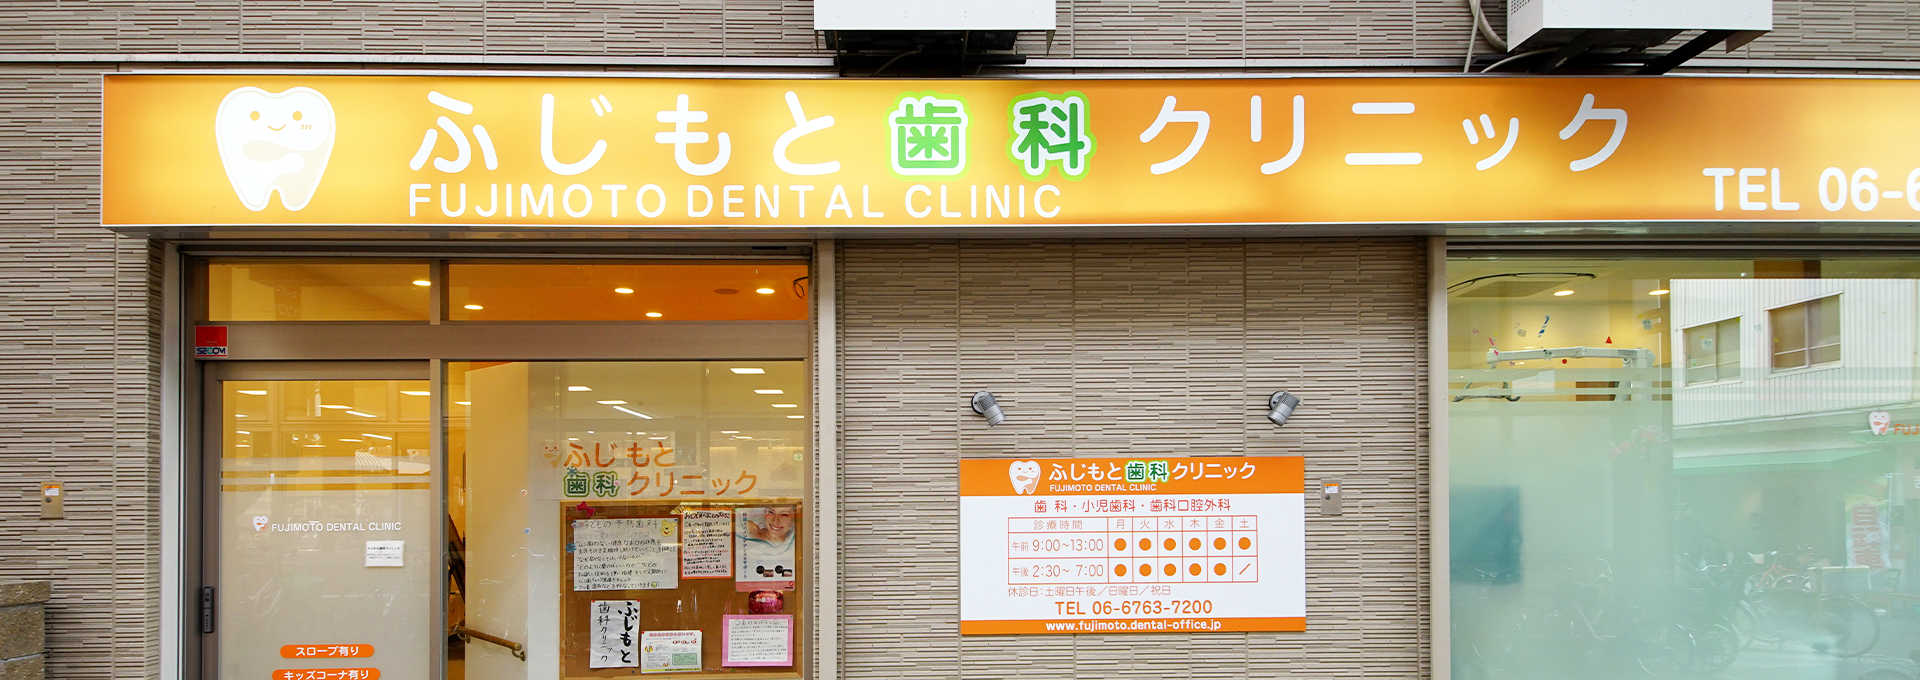 ふじもと歯科クリニック